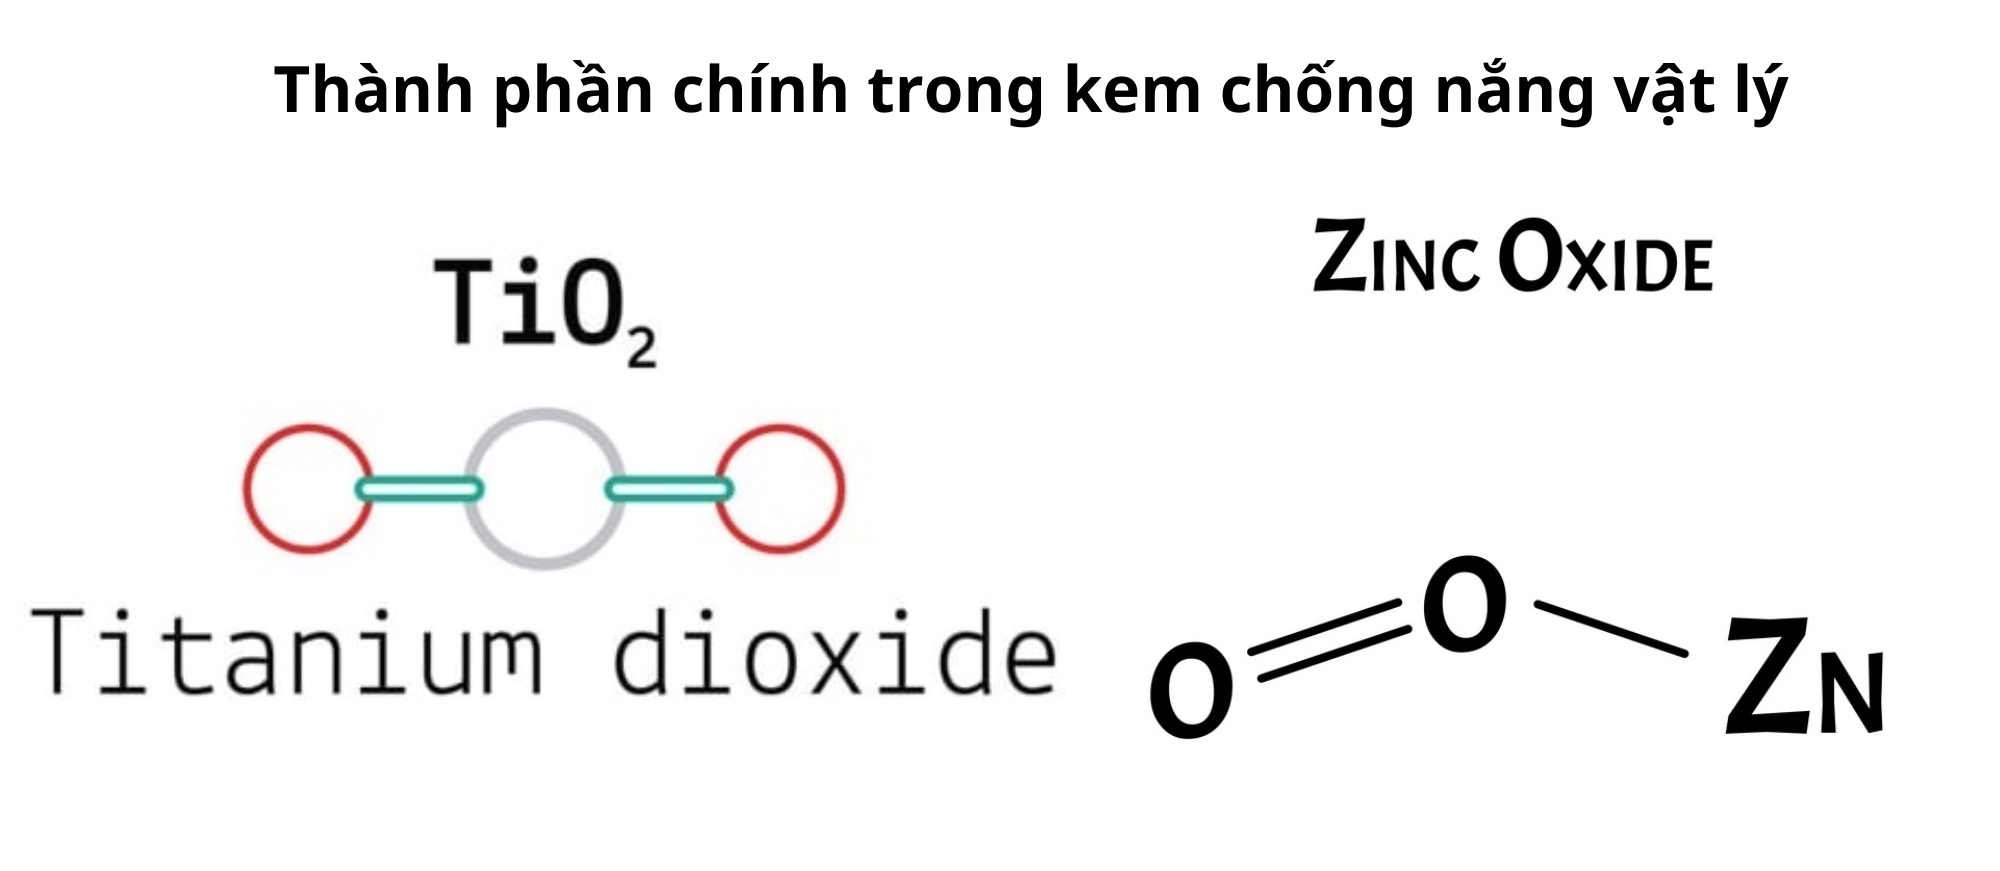 Titanium dioxide và zinc oxide là thành phần chính trong kem chống nắng vật lý